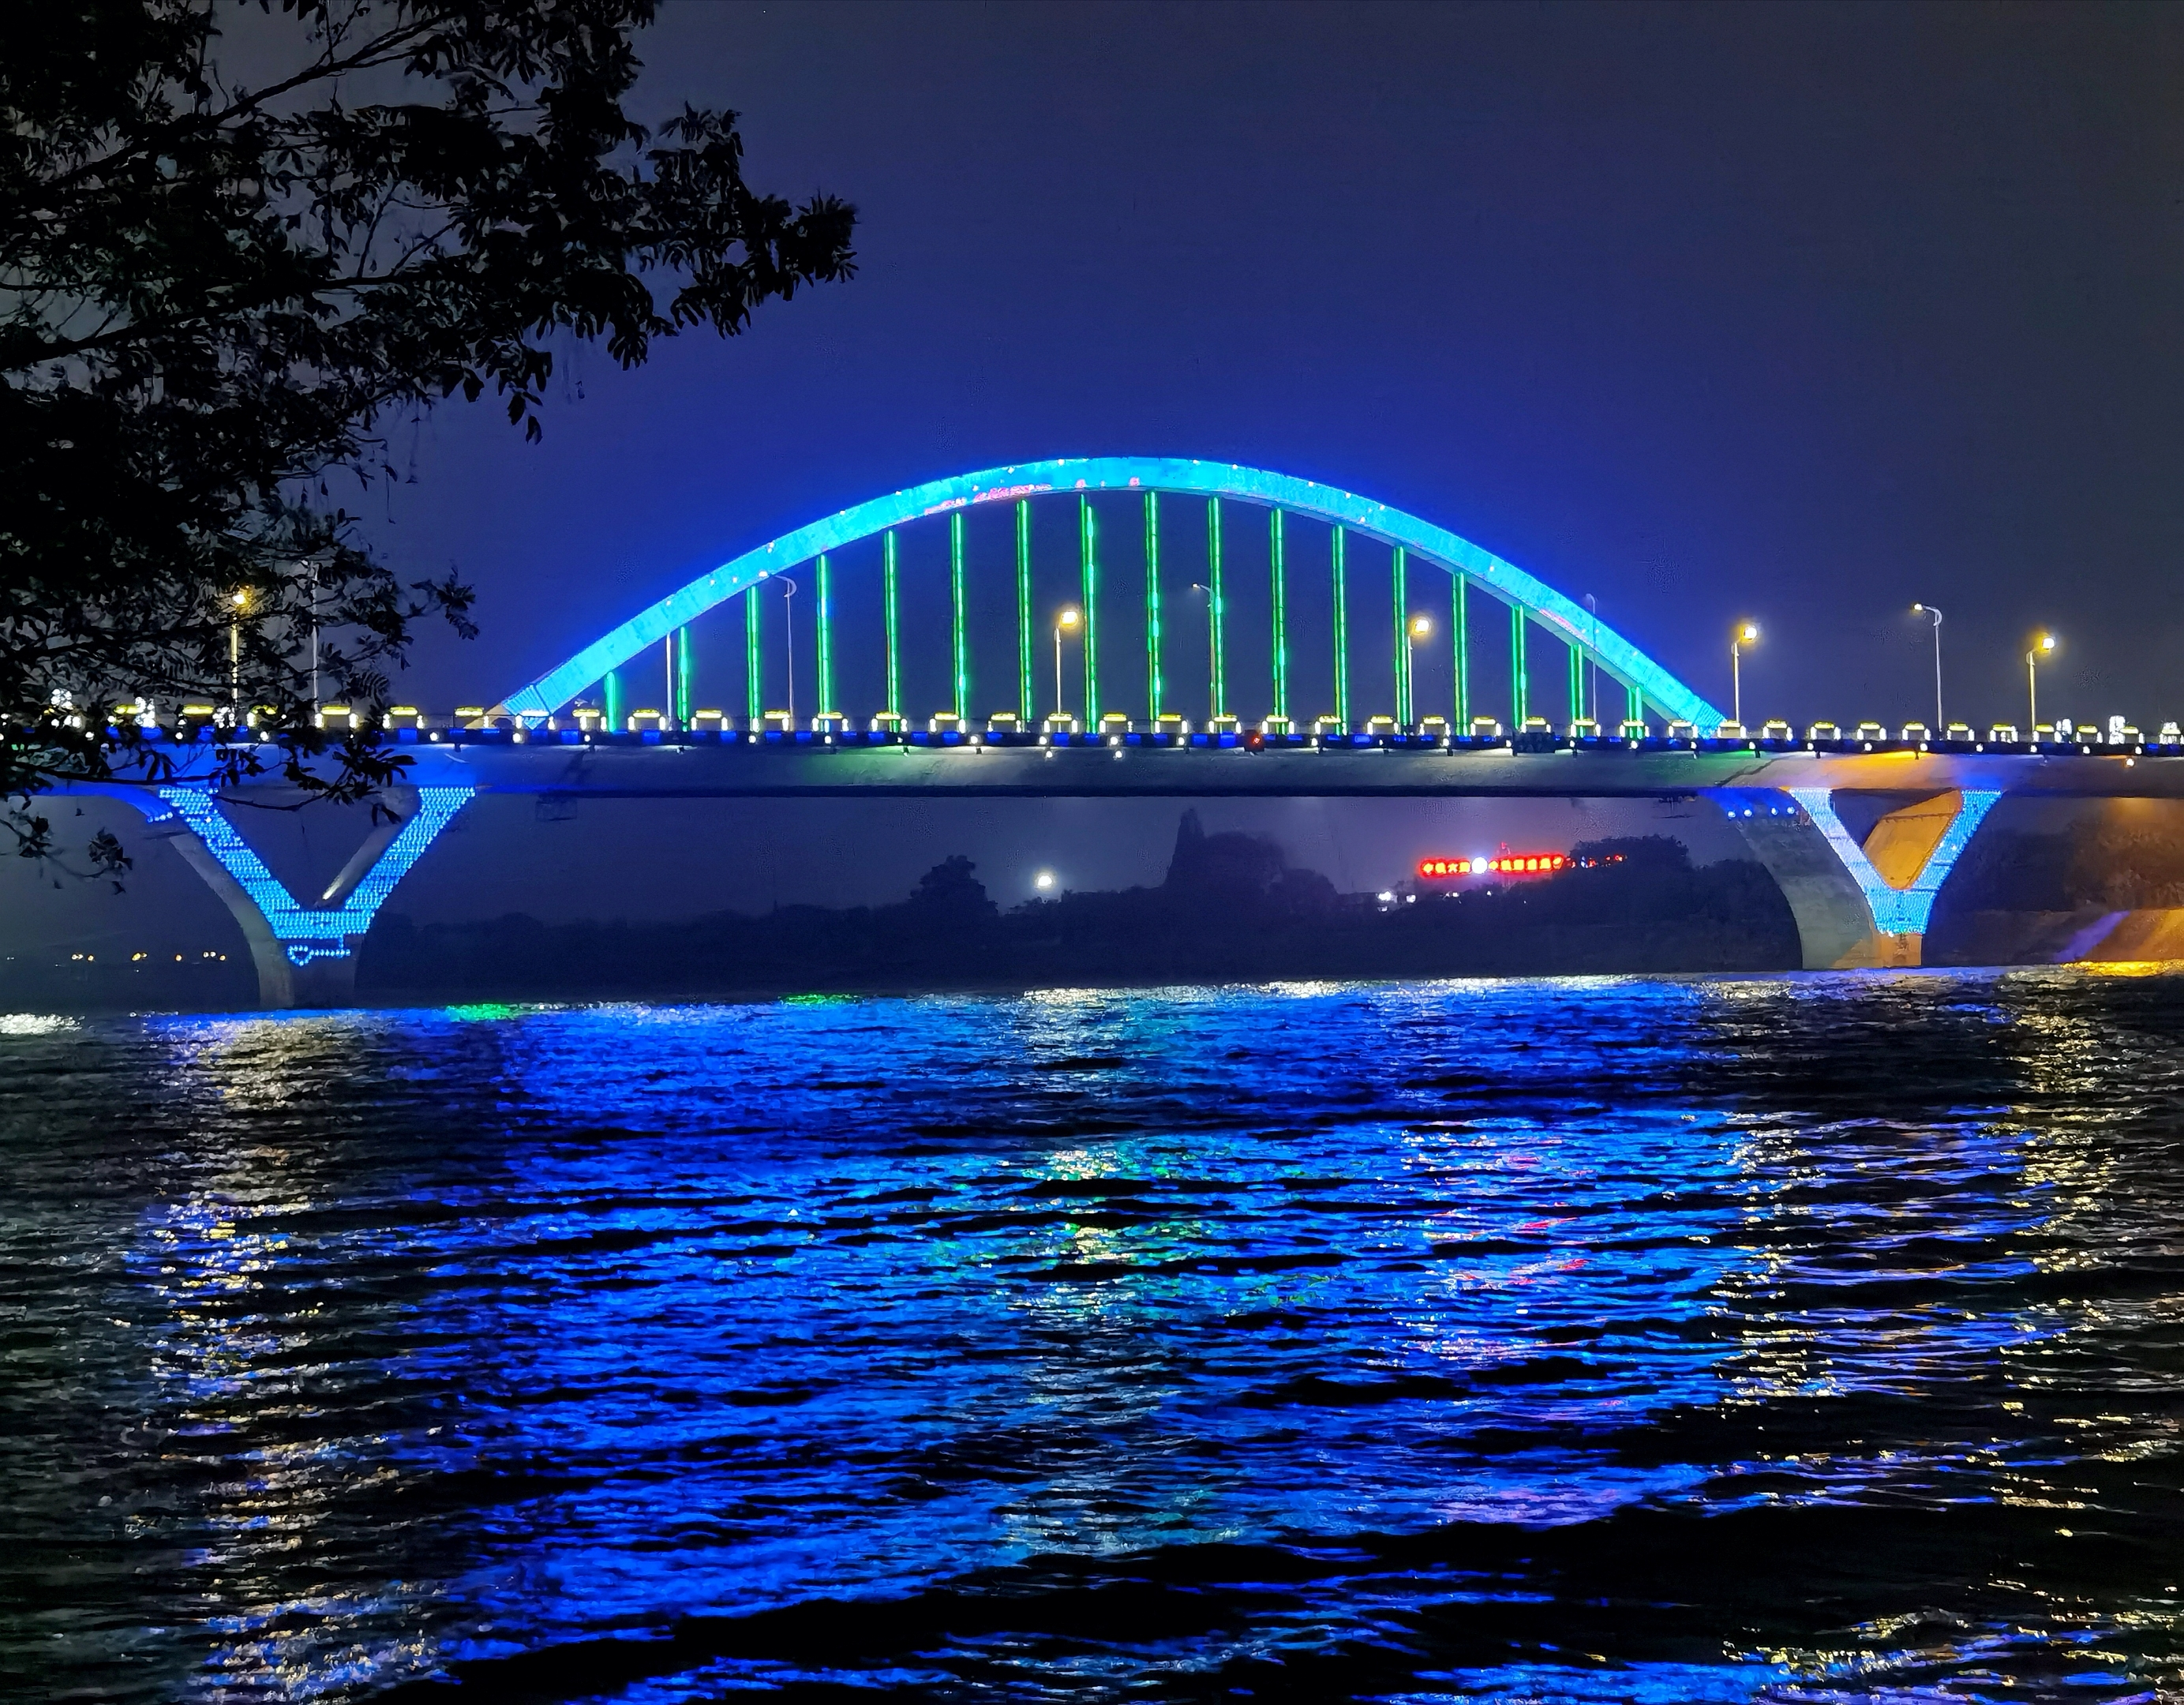 夜幕下的衢江大桥成了一道风景线. 谢谢你的观看!